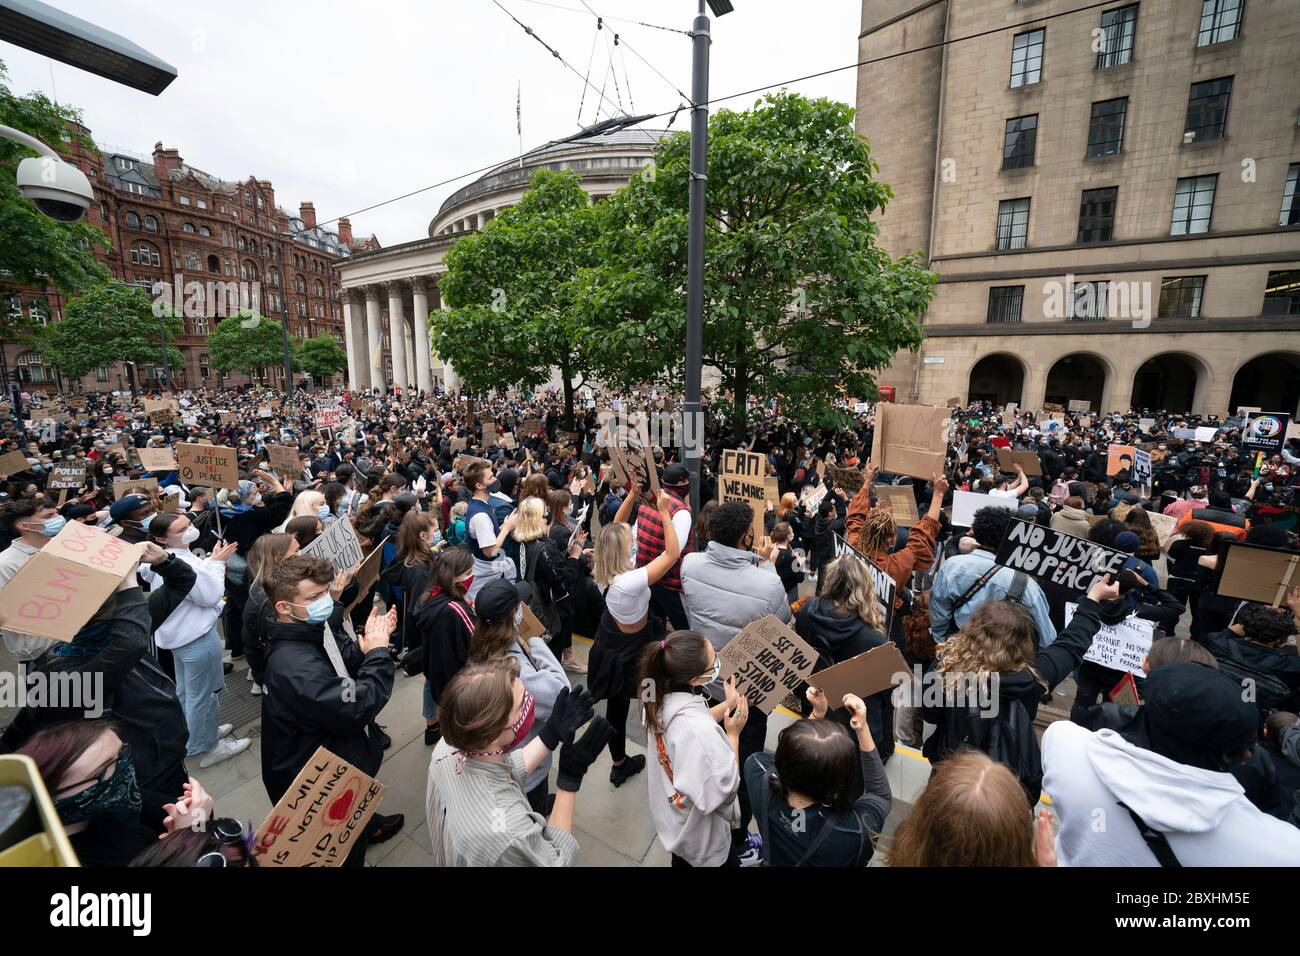 Manchester, Royaume-Uni. 7 juin 2020. Des membres du public sont vus à une manifestation Black Lives Matter, Manchester, Royaume-Uni. Crédit : Jon Super/Alay Live News. Banque D'Images